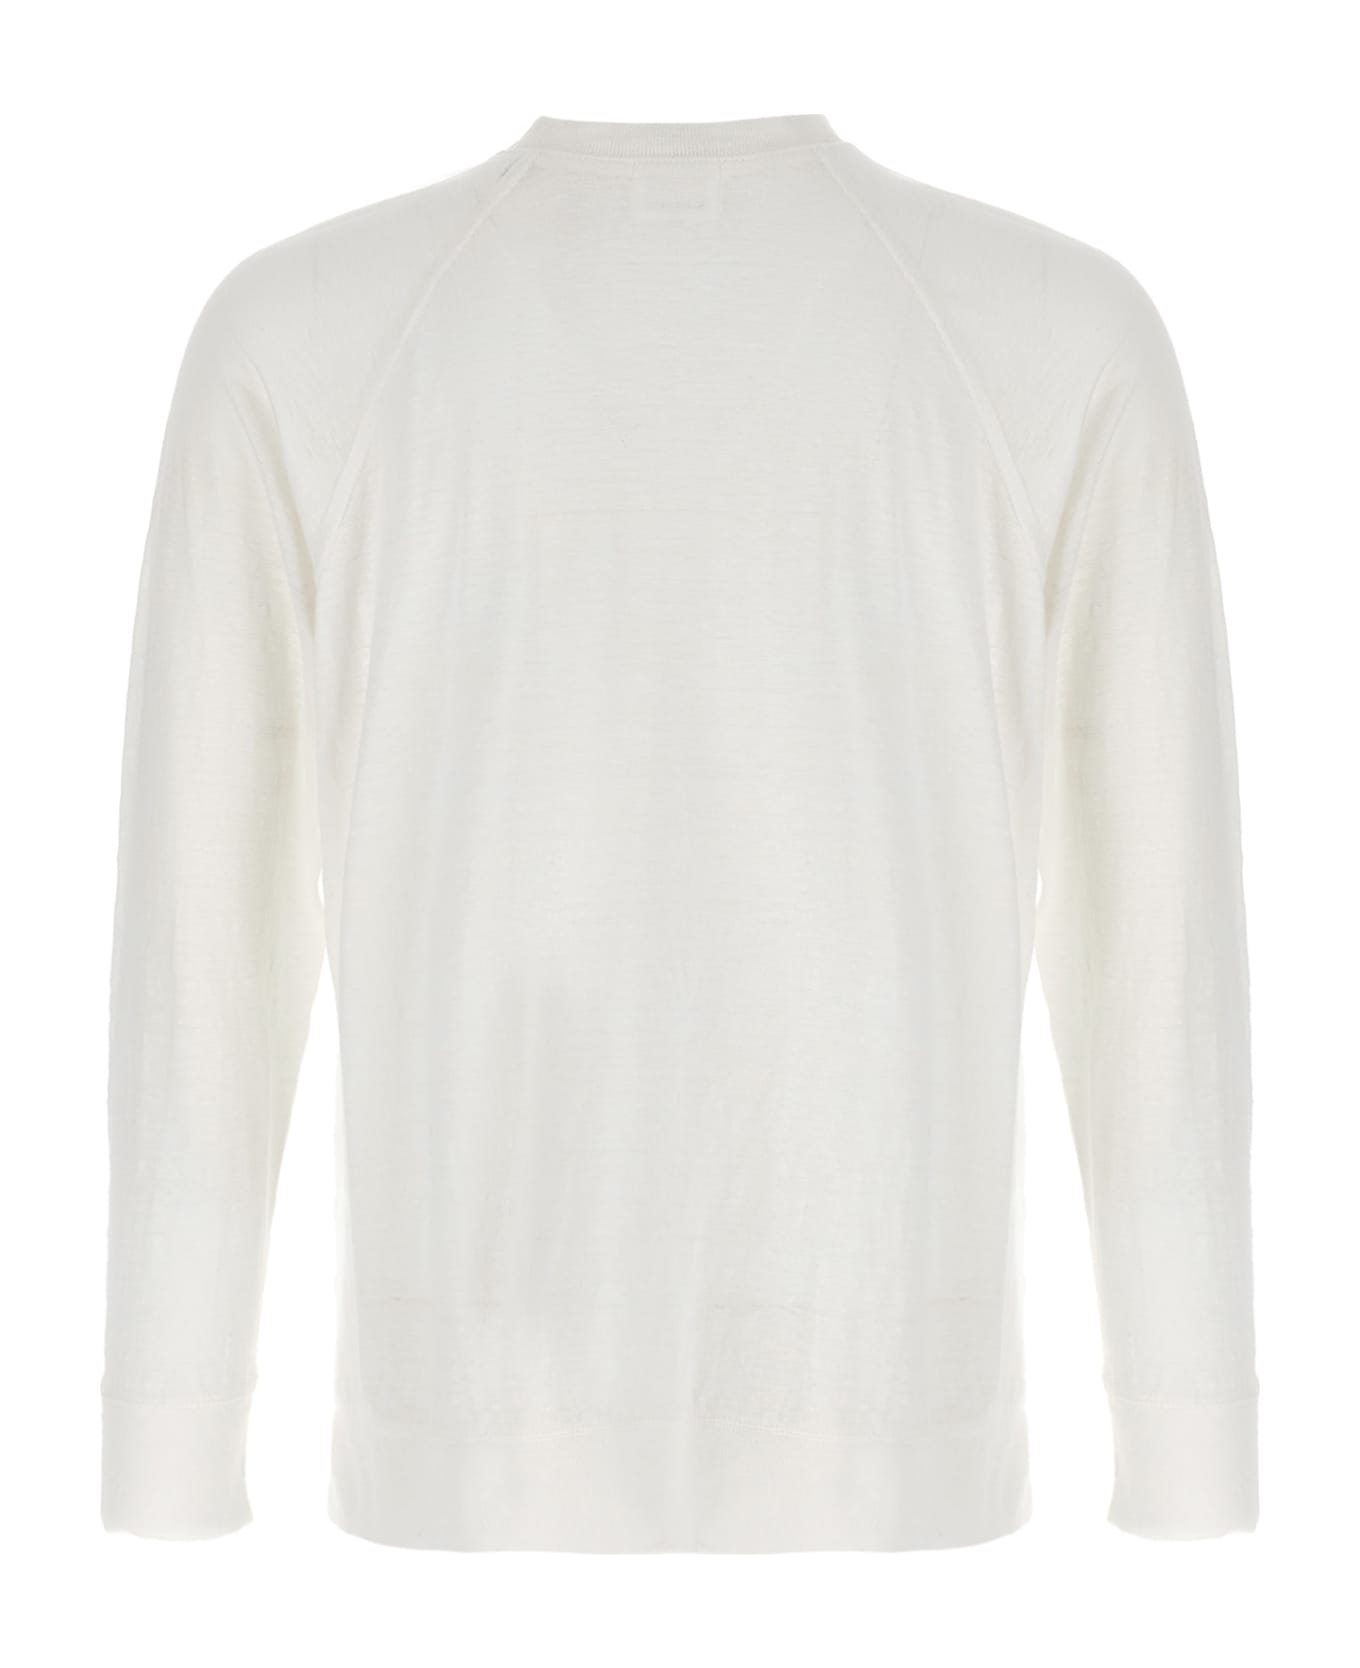 Isabel Marant Kieffer Linen Crew Neck T-shirt - White/Black